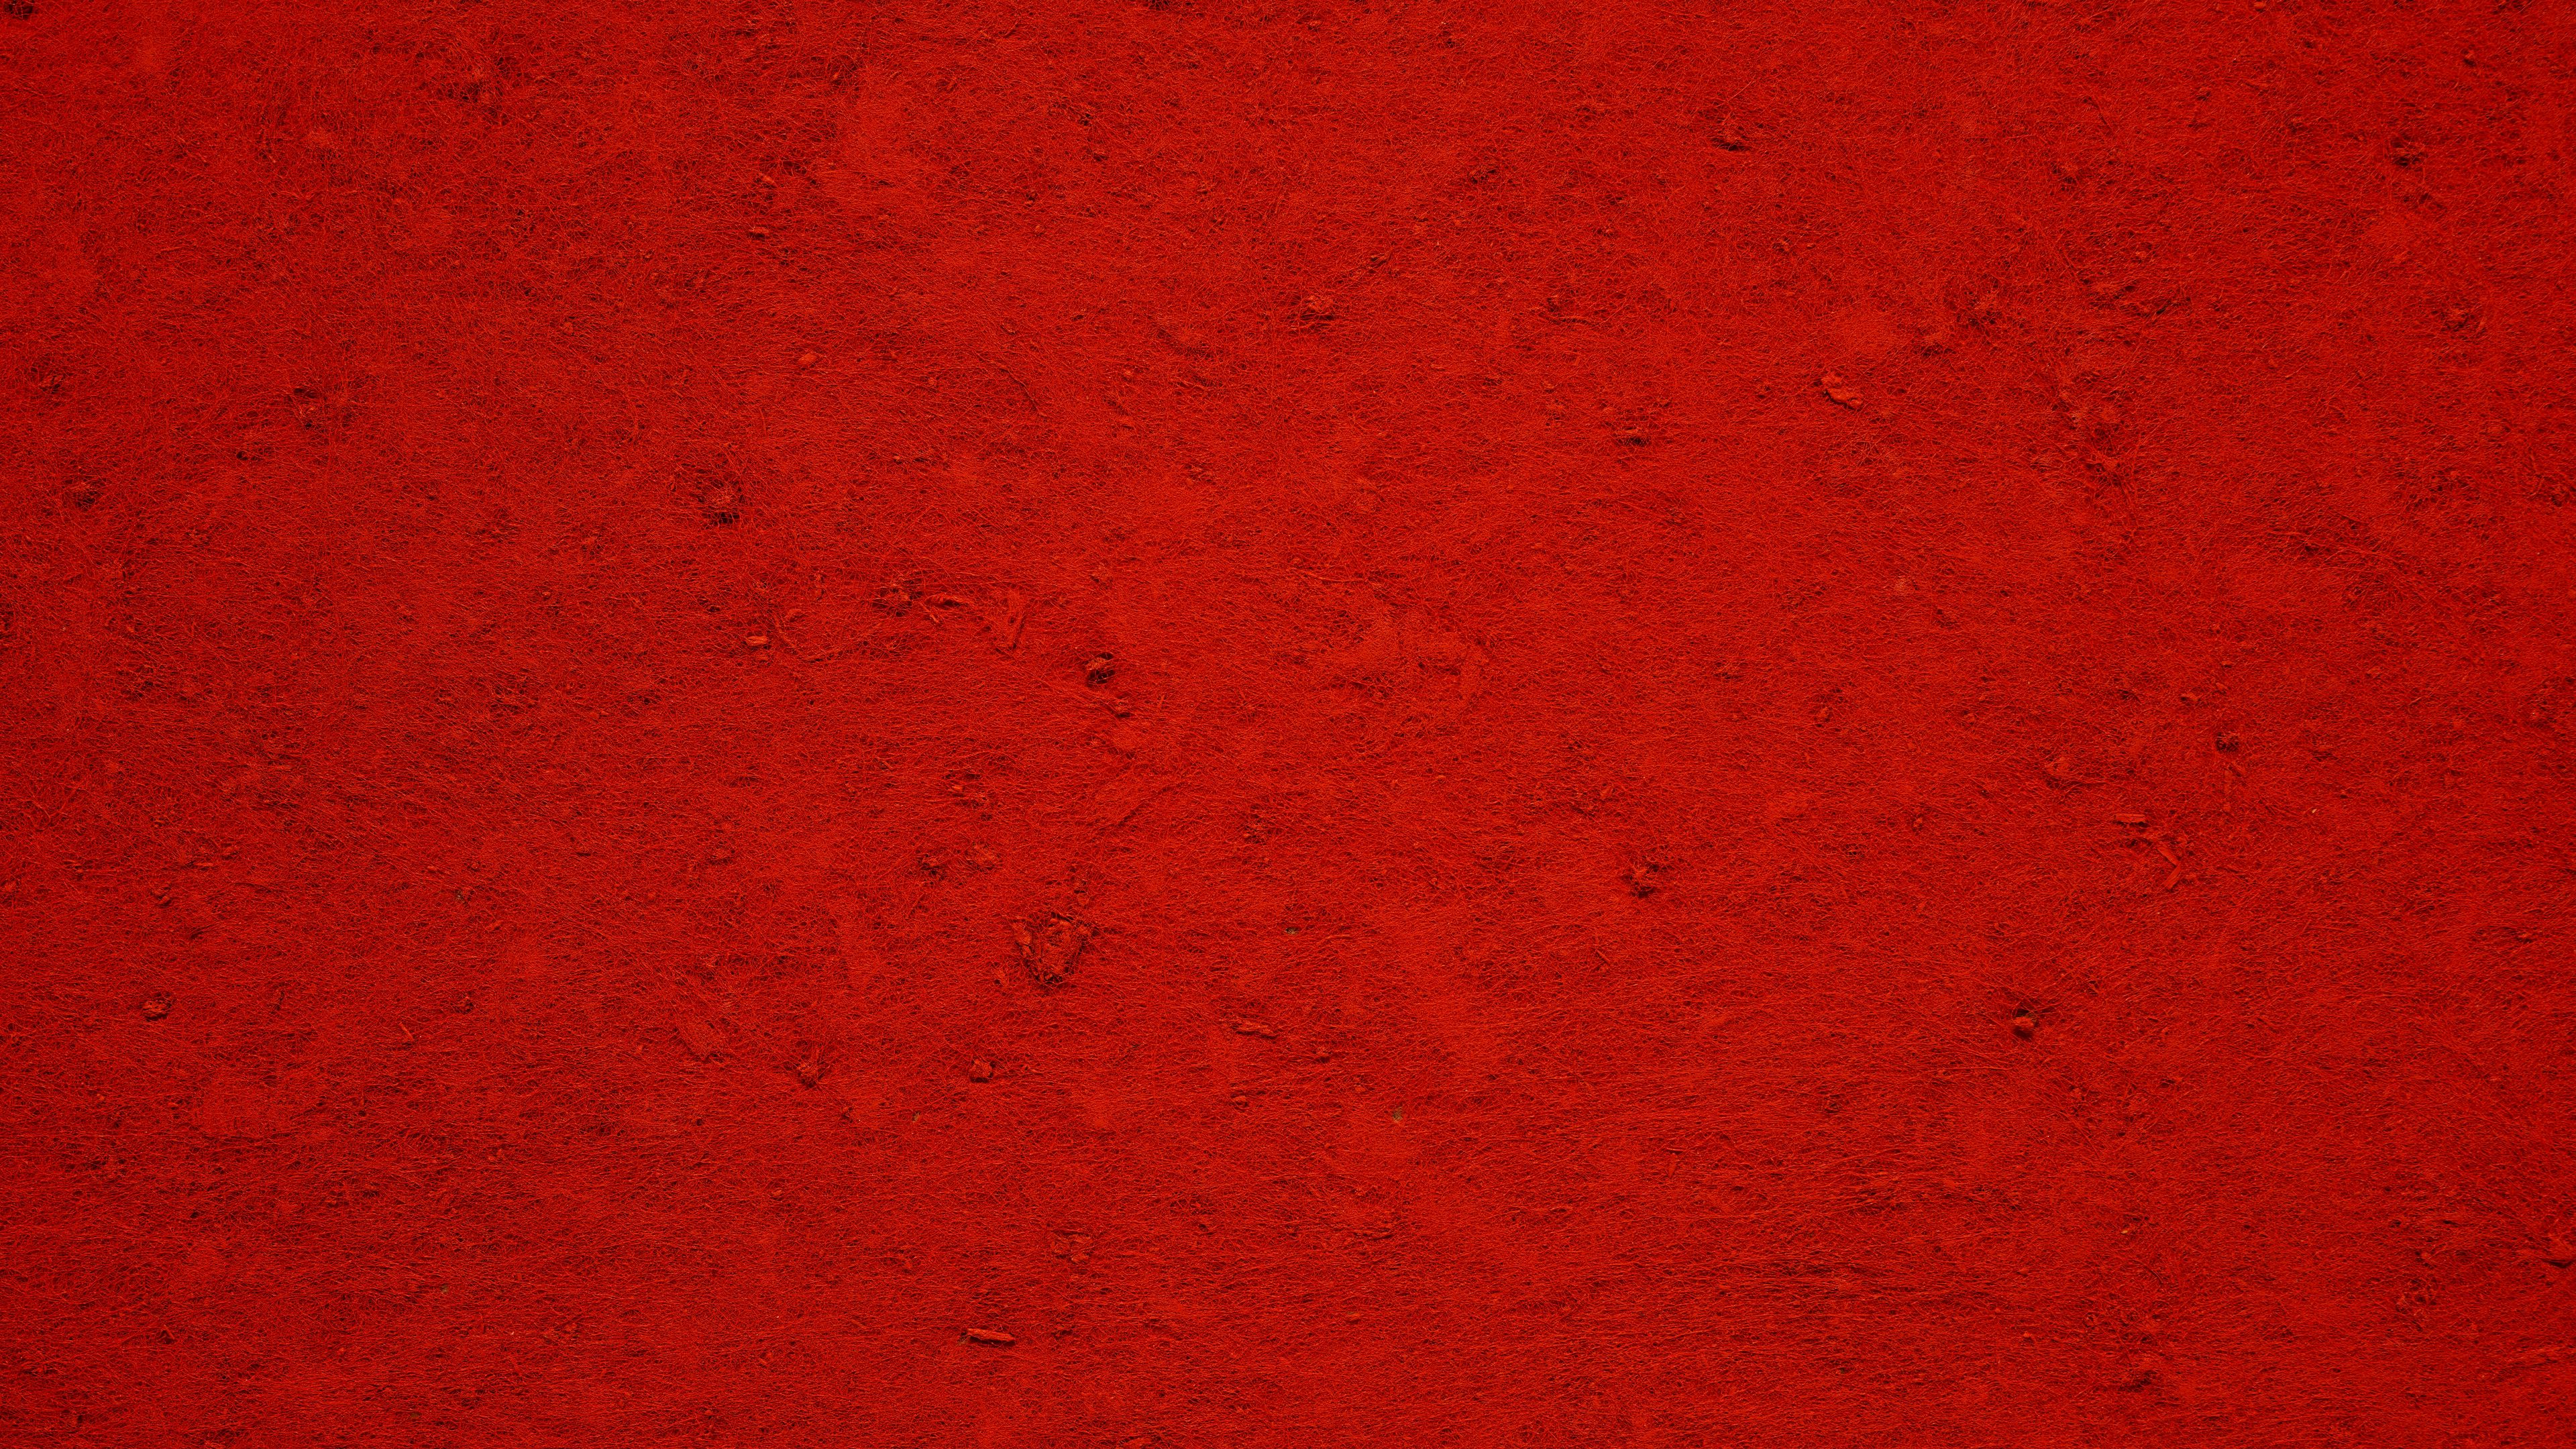 Với Surface Red Texture 4K, những hình ảnh với chất liệu vải đỏ trang nhã sẽ làm cho thiết bị của bạn đẹp mê hồn hơn bao giờ hết. Đón nhận sự khác biệt với chất liệu đặc biệt này và trải nghiệm sự hoàn hảo của những hình ảnh đẹp nhất.